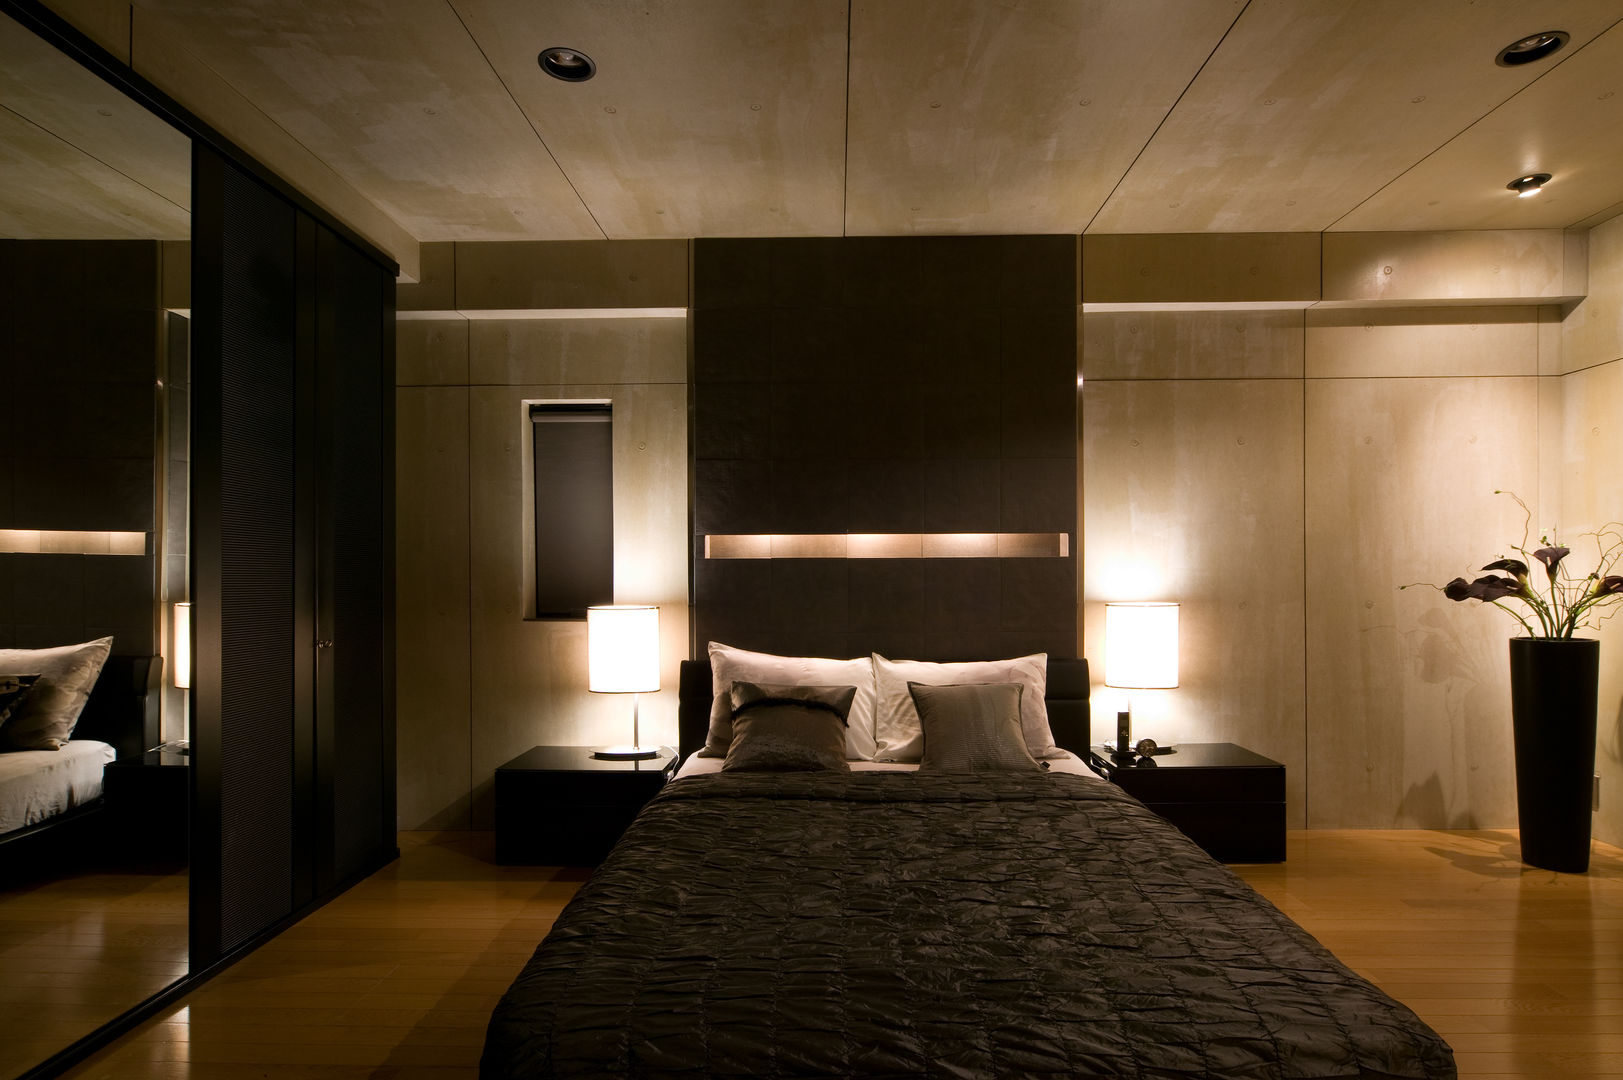 シンプルモダンなオフィス空間のある家, MACHIKO KOJIMA PRODUCE MACHIKO KOJIMA PRODUCE Dormitorios modernos